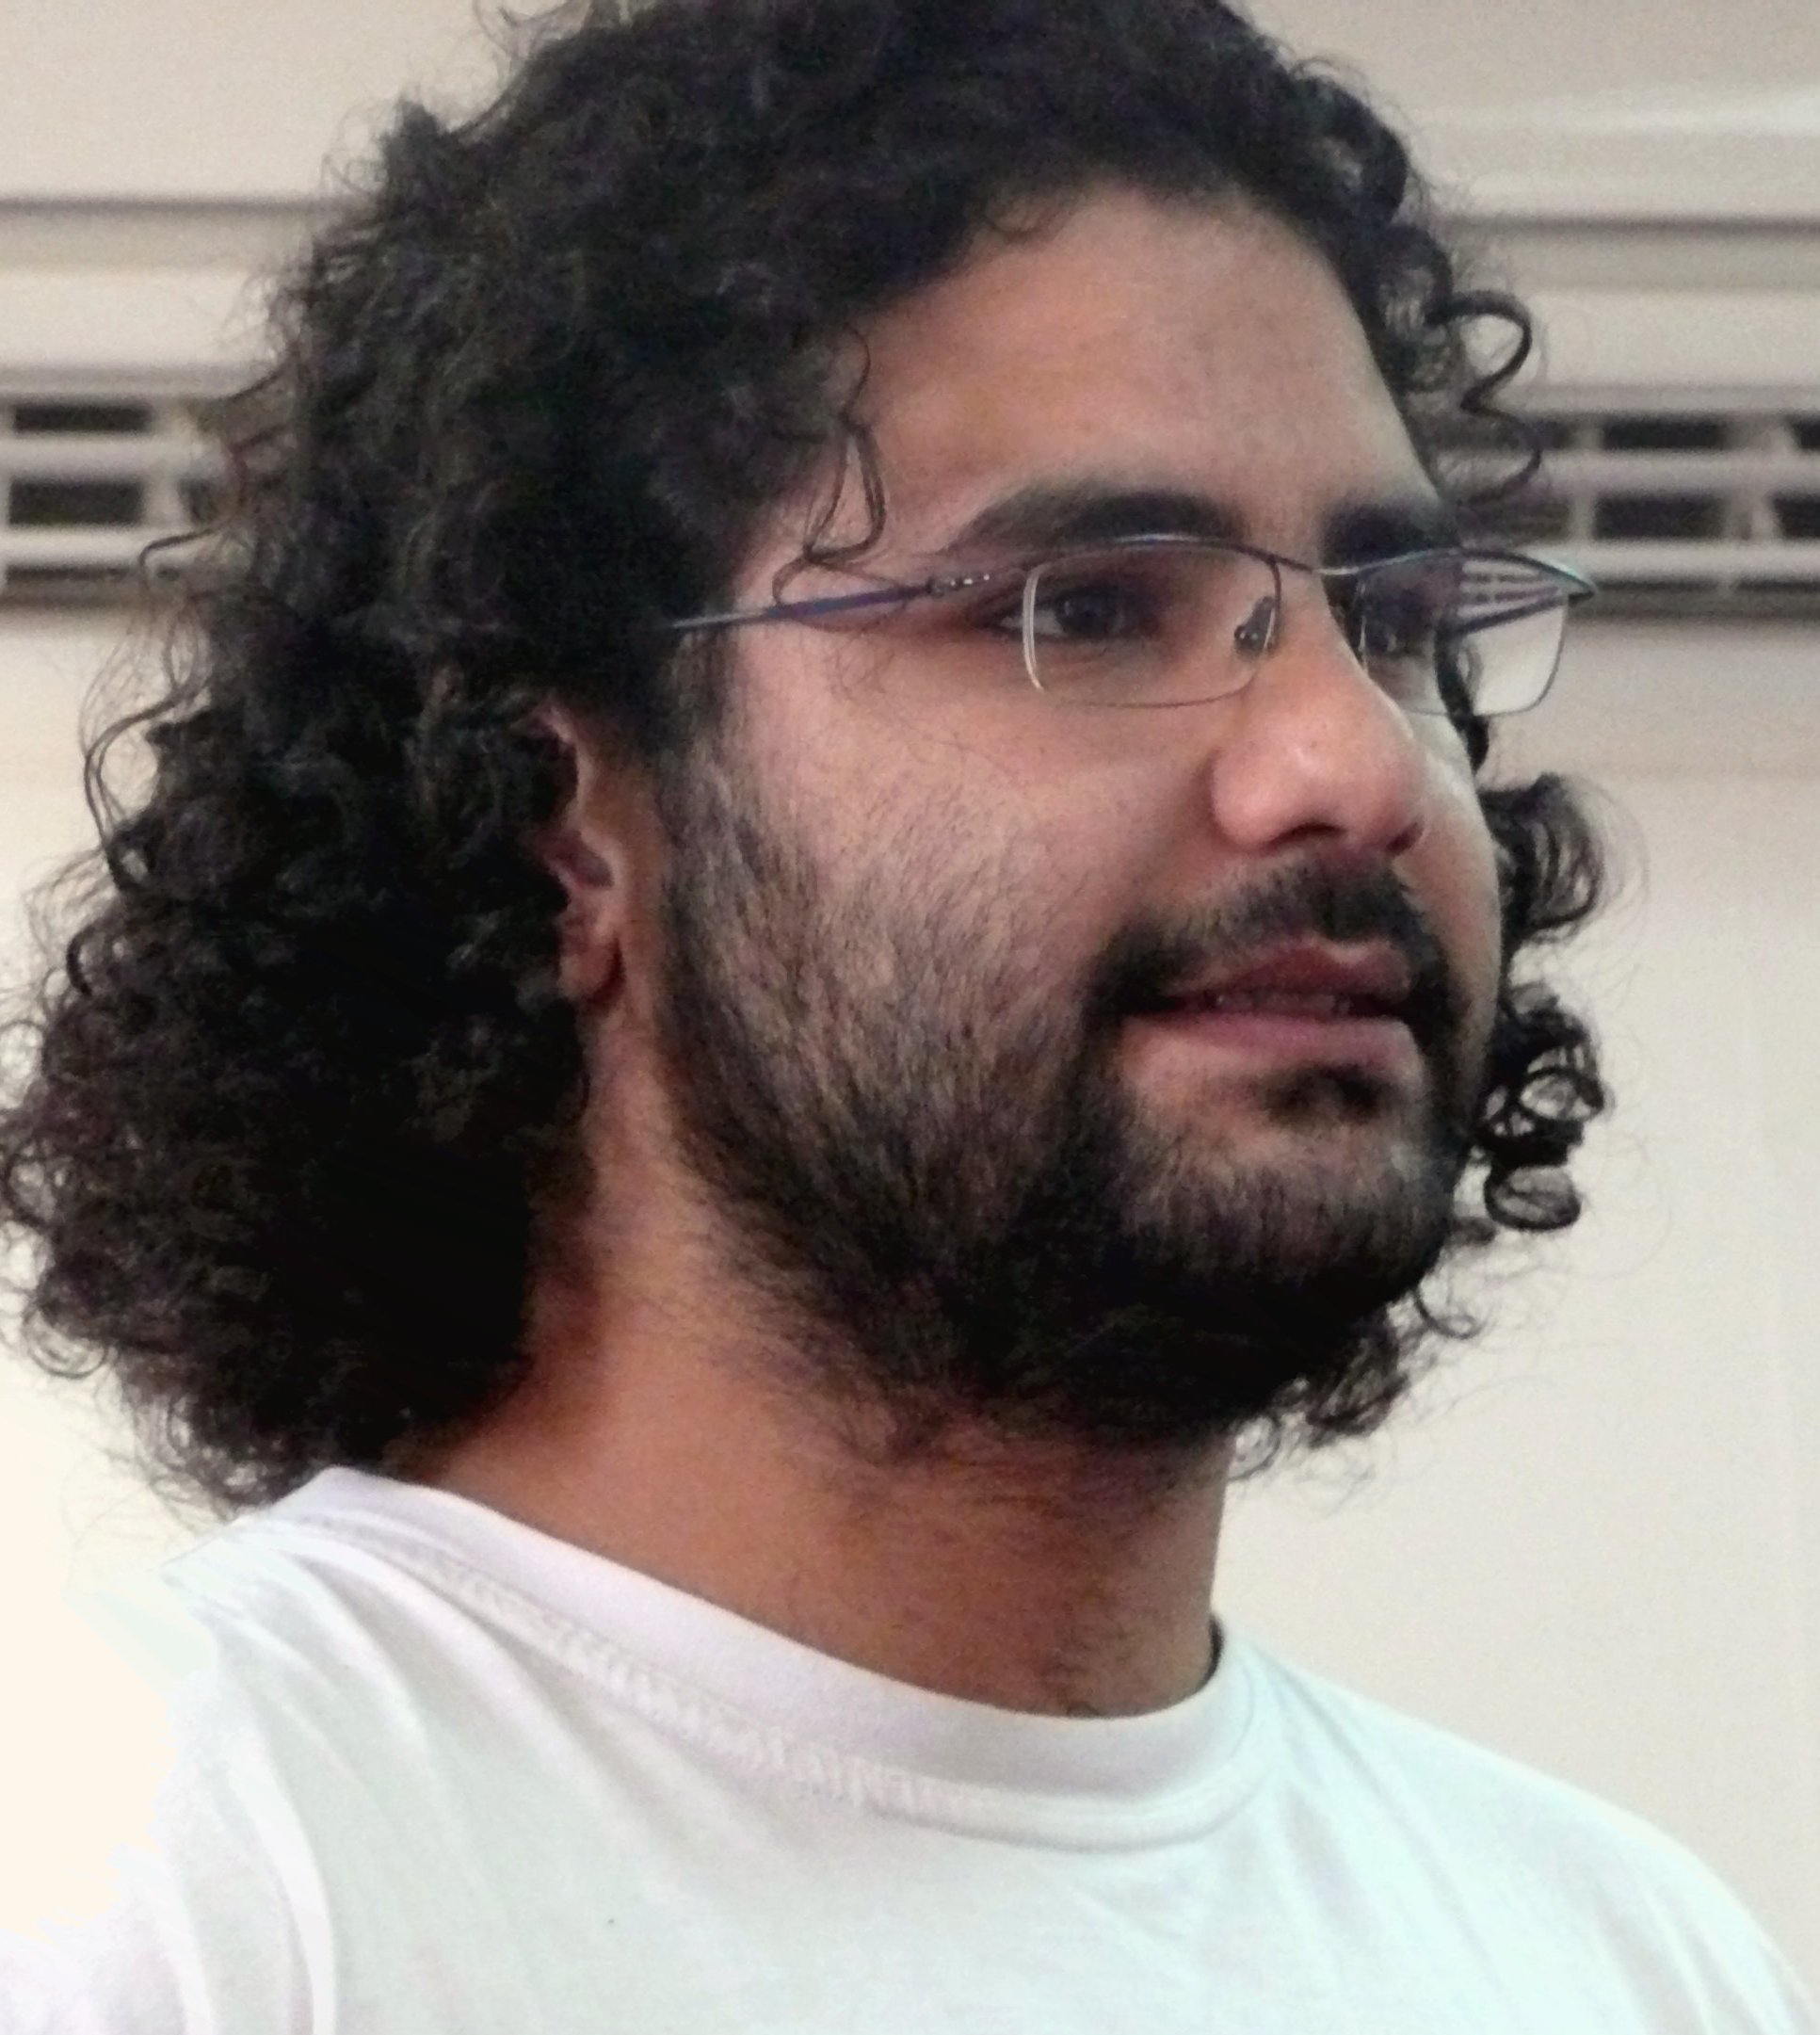 Egyptian-British activist breaks hunger strike, according to letter on Twitter 